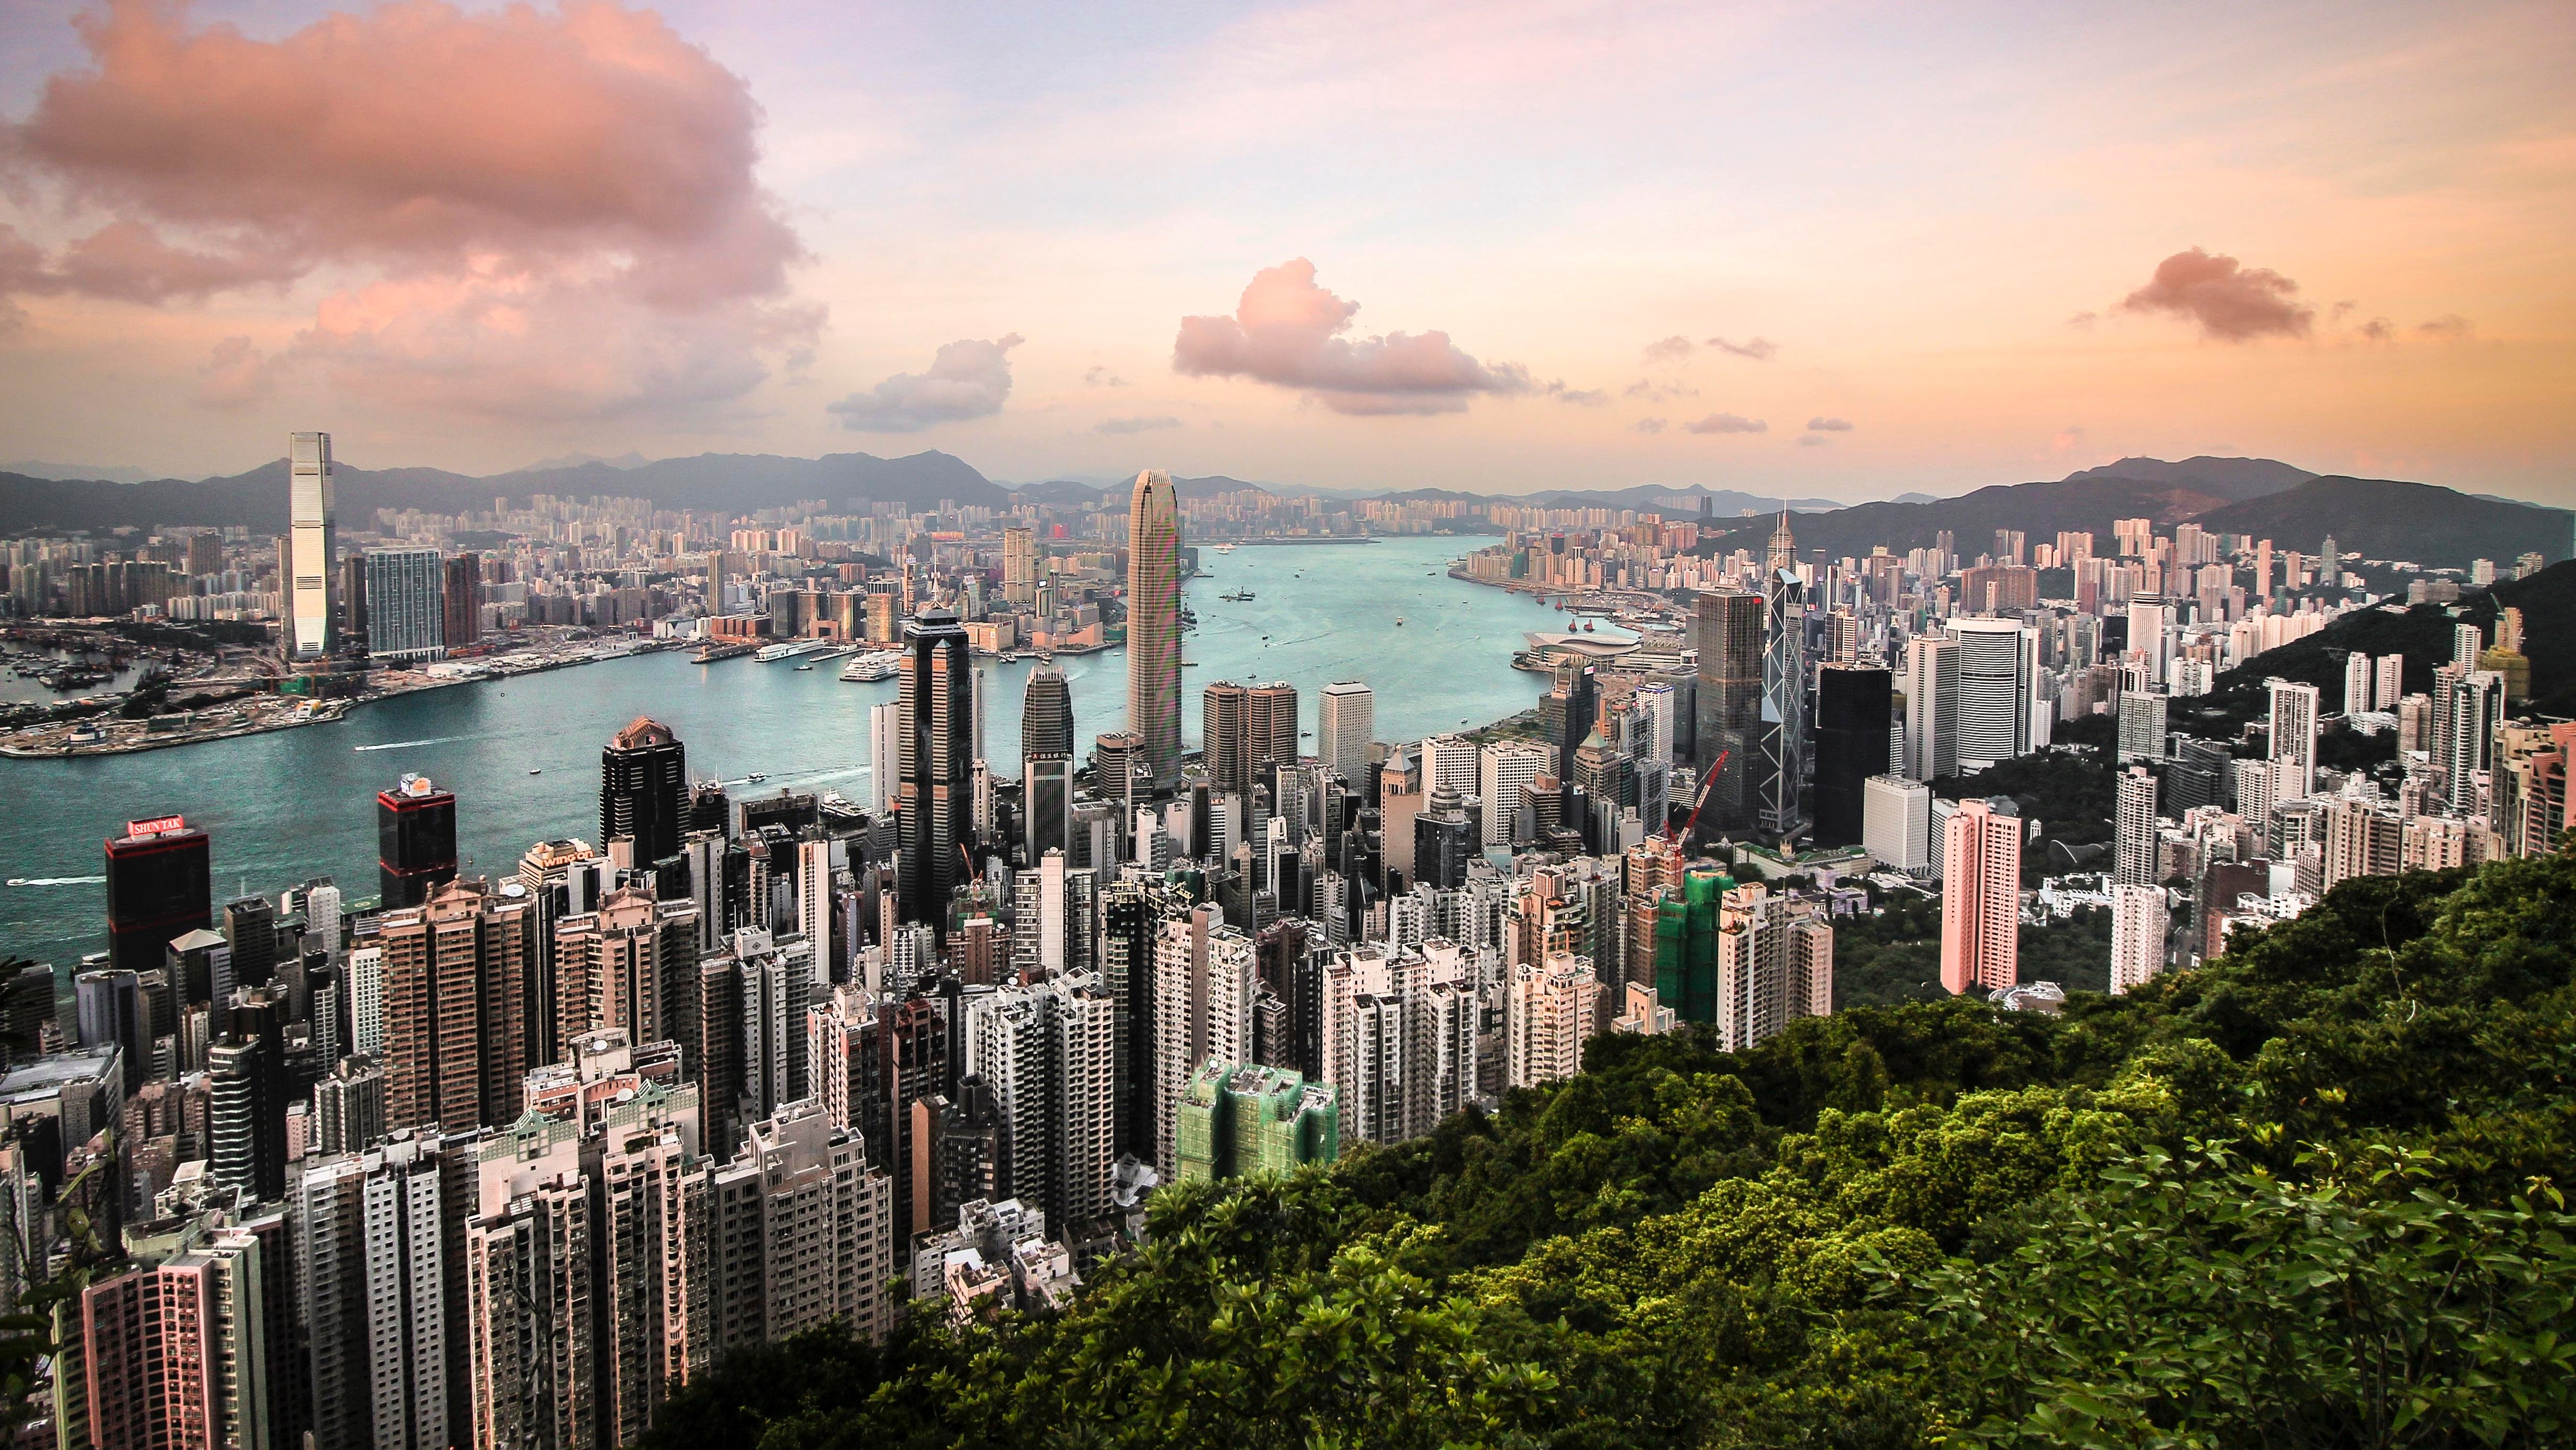 Hong Kong skyline viewed from Victoria Peak